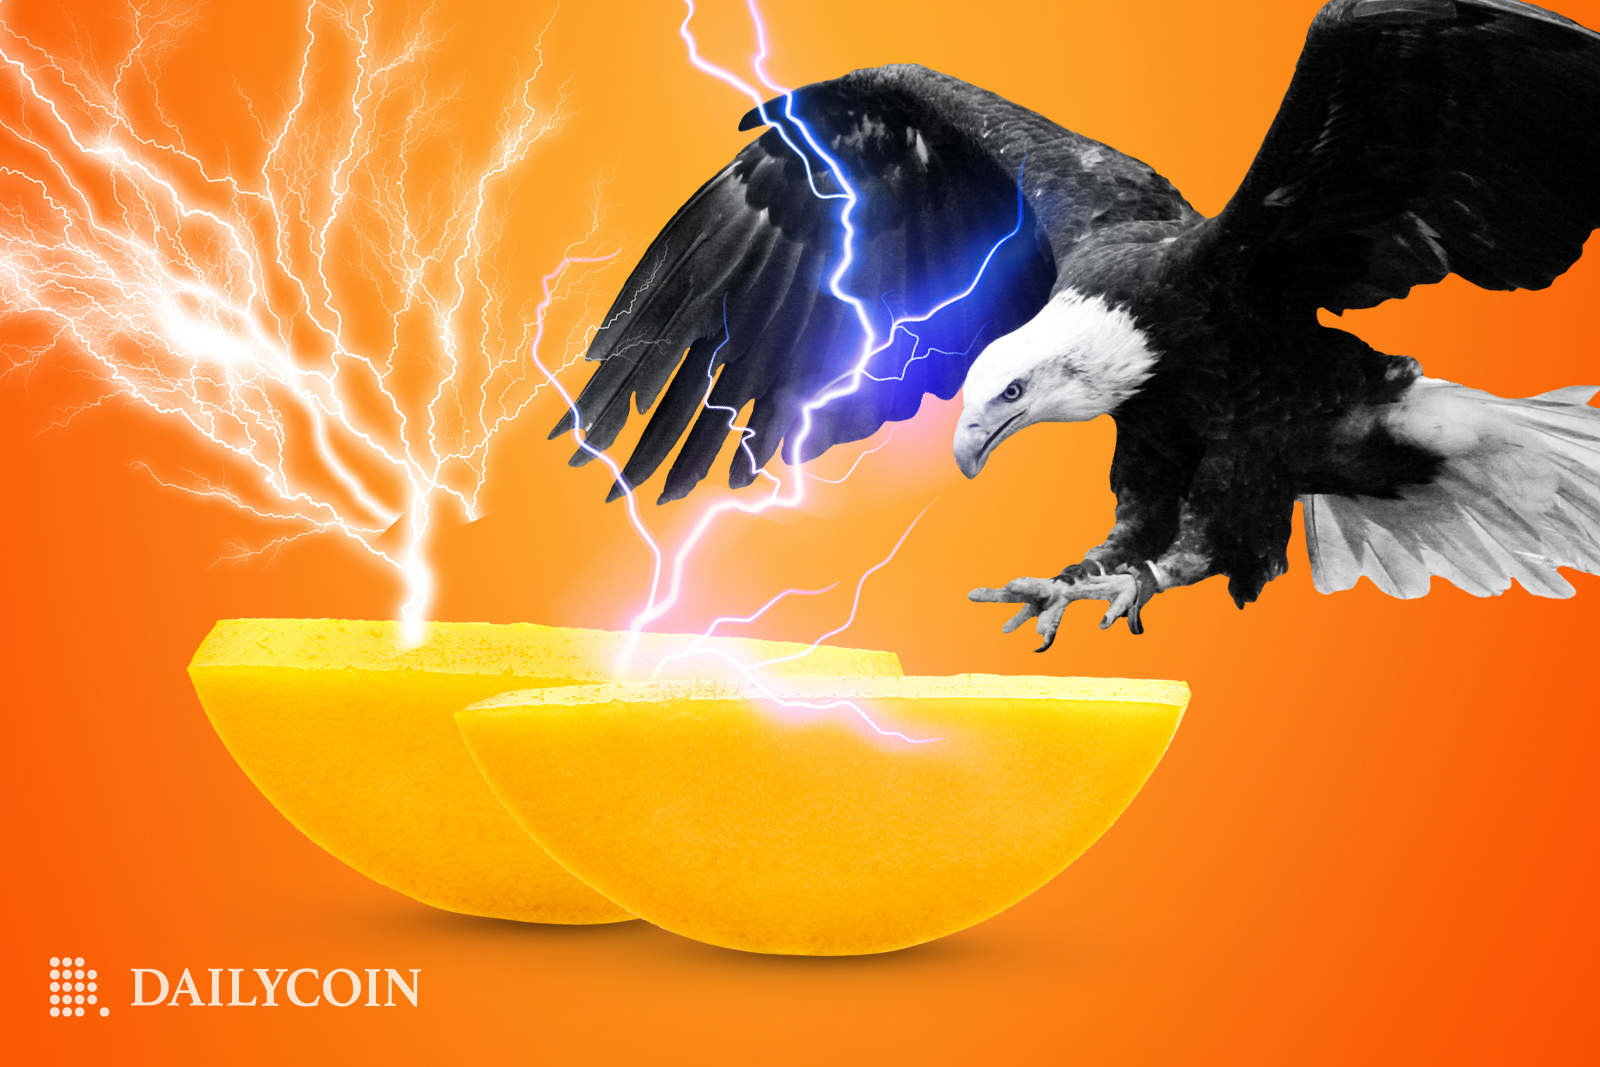 Ein Adler landet auf zwei Mangostücken, aus denen Blitze hervorgehen